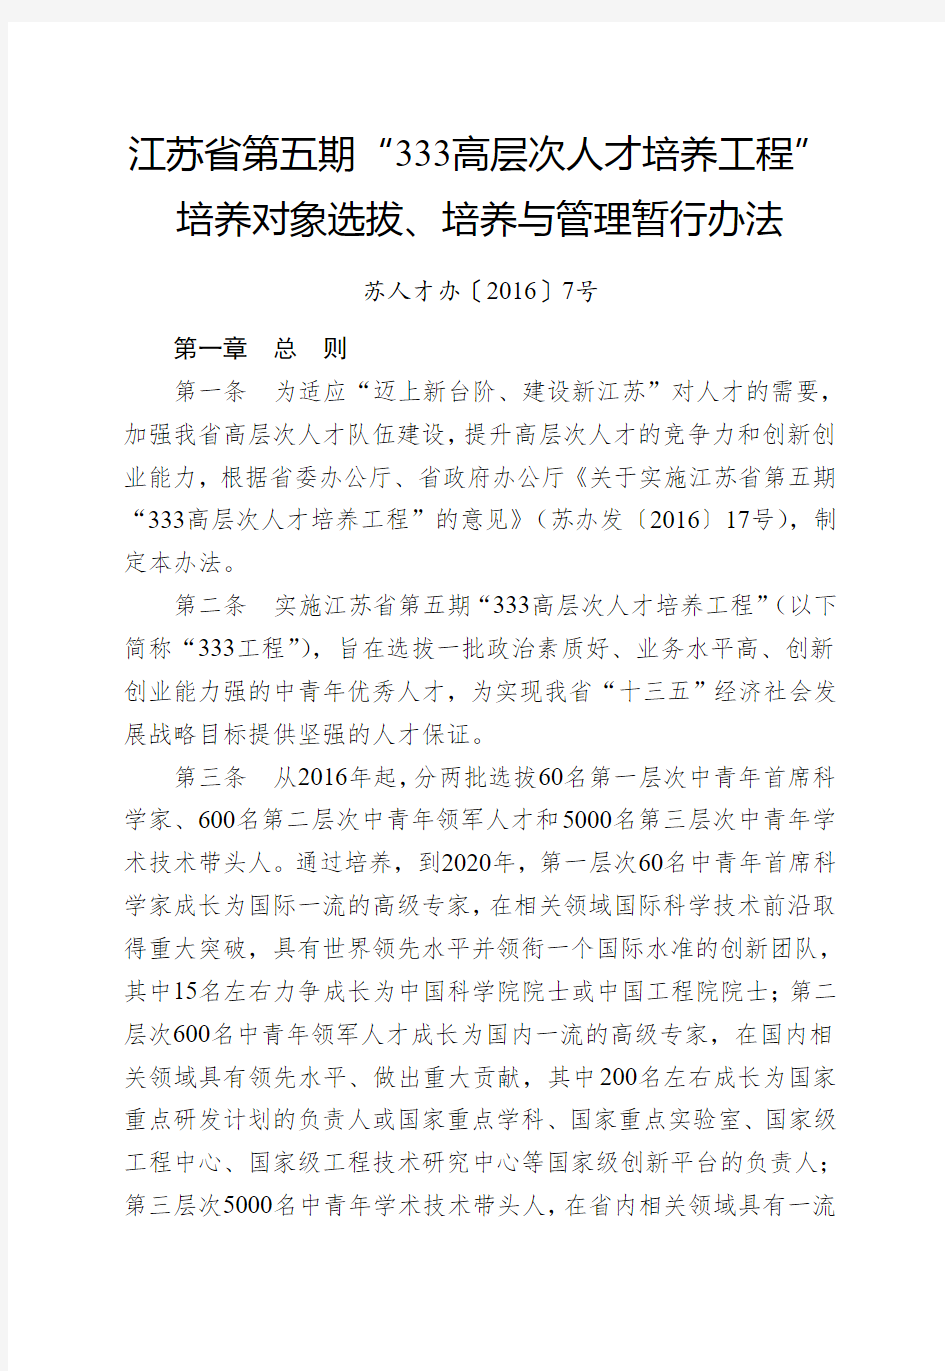 江苏省第五期“333高层次人才培养工程”培养对象选拔、培养与管理暂行办法